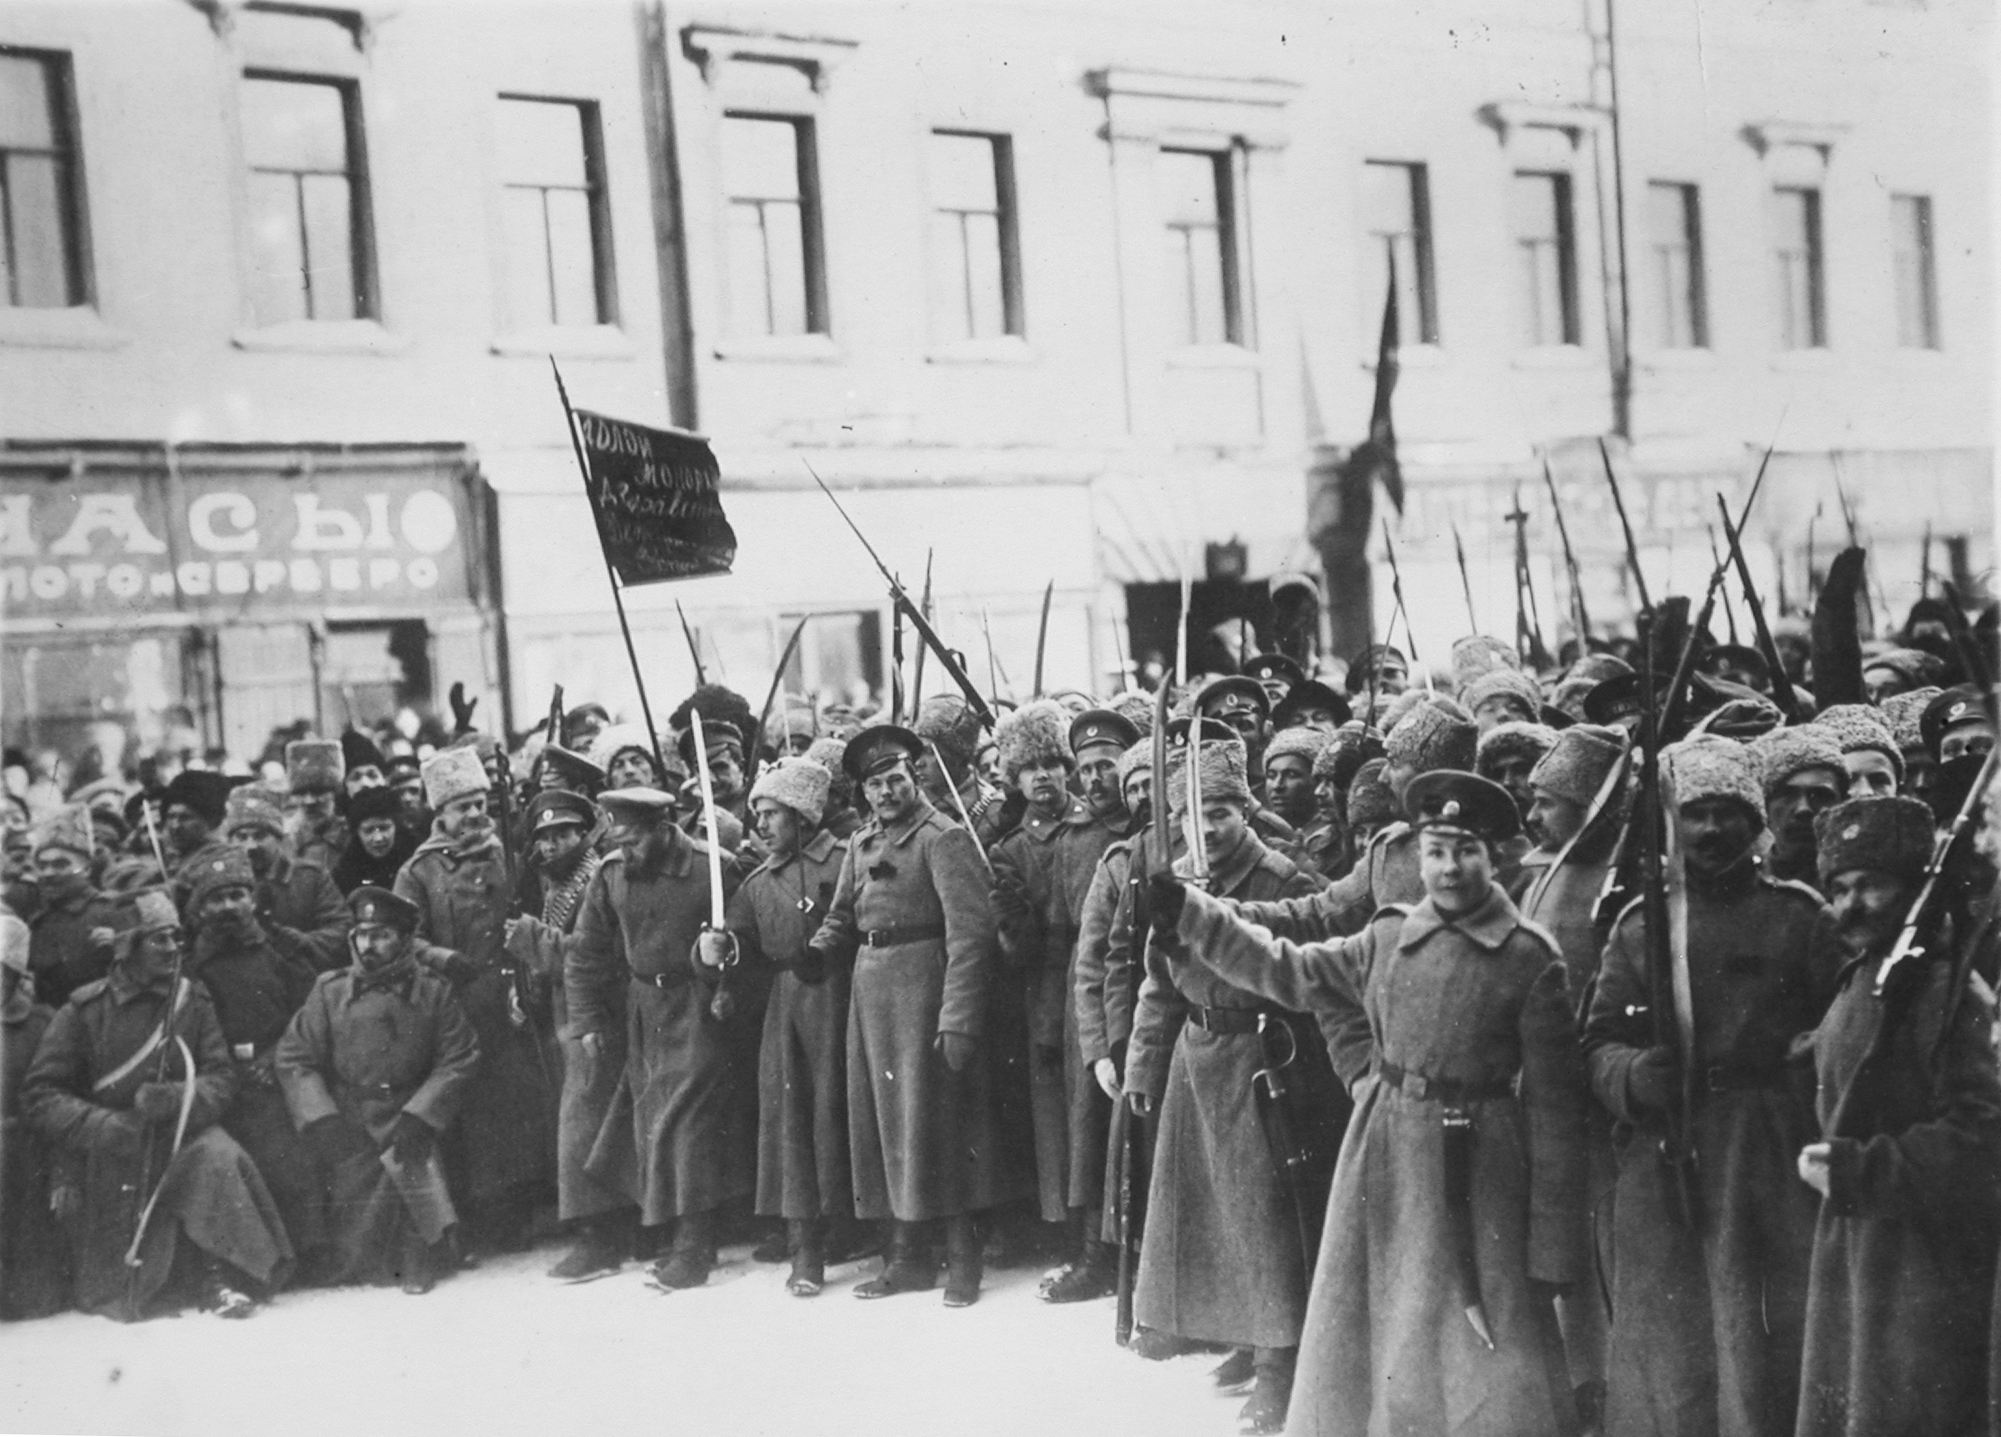 Февральская революция 1917 привела